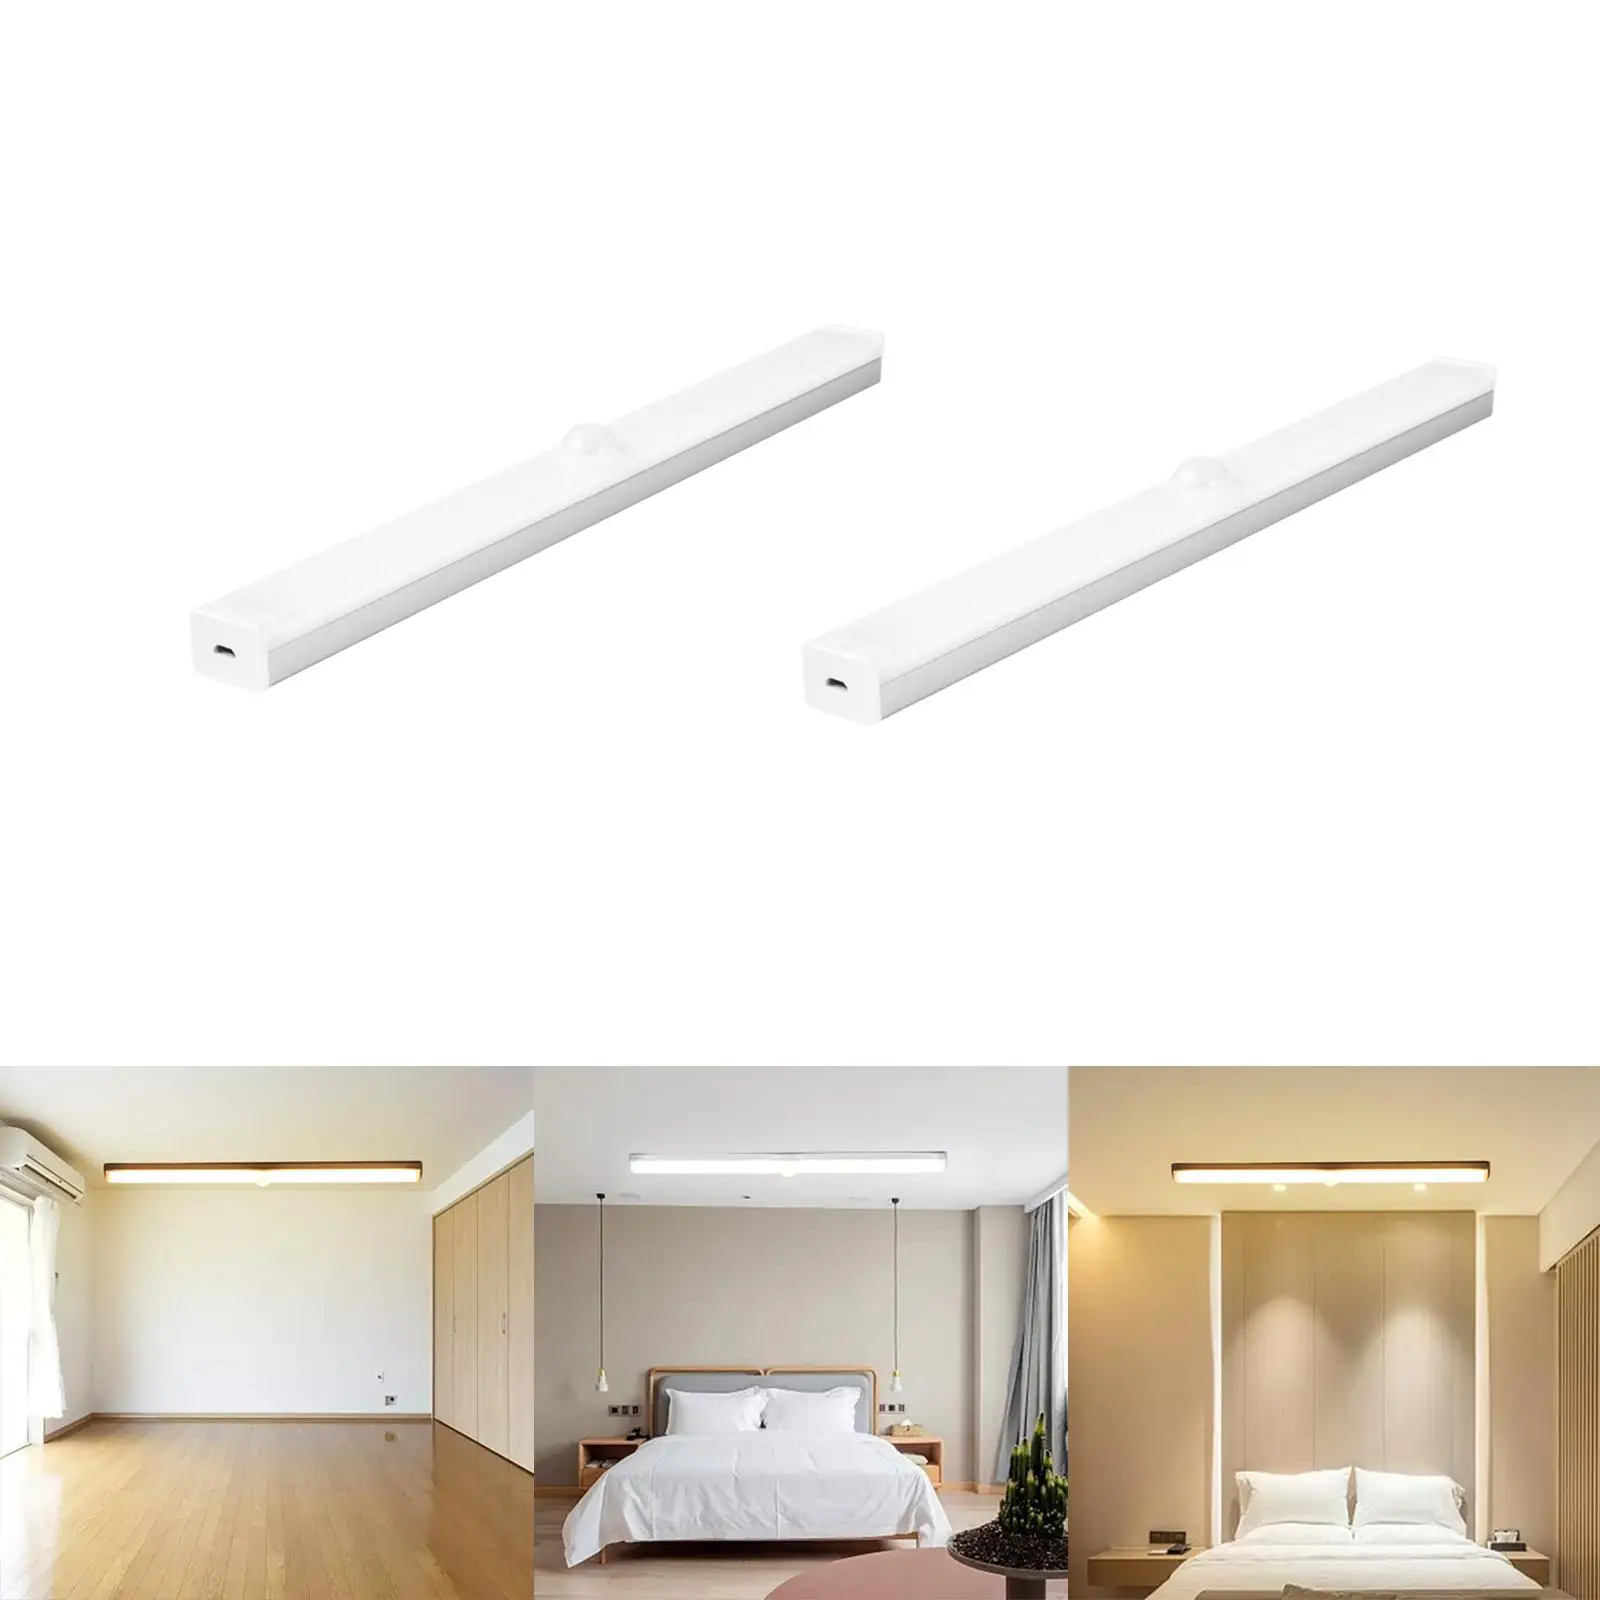 Body Sensor Lights Closet Bedroom Dimming LED Home Under Cabinet Lighting Lights Strip Bar for Display Case Desk Wardrobe Room